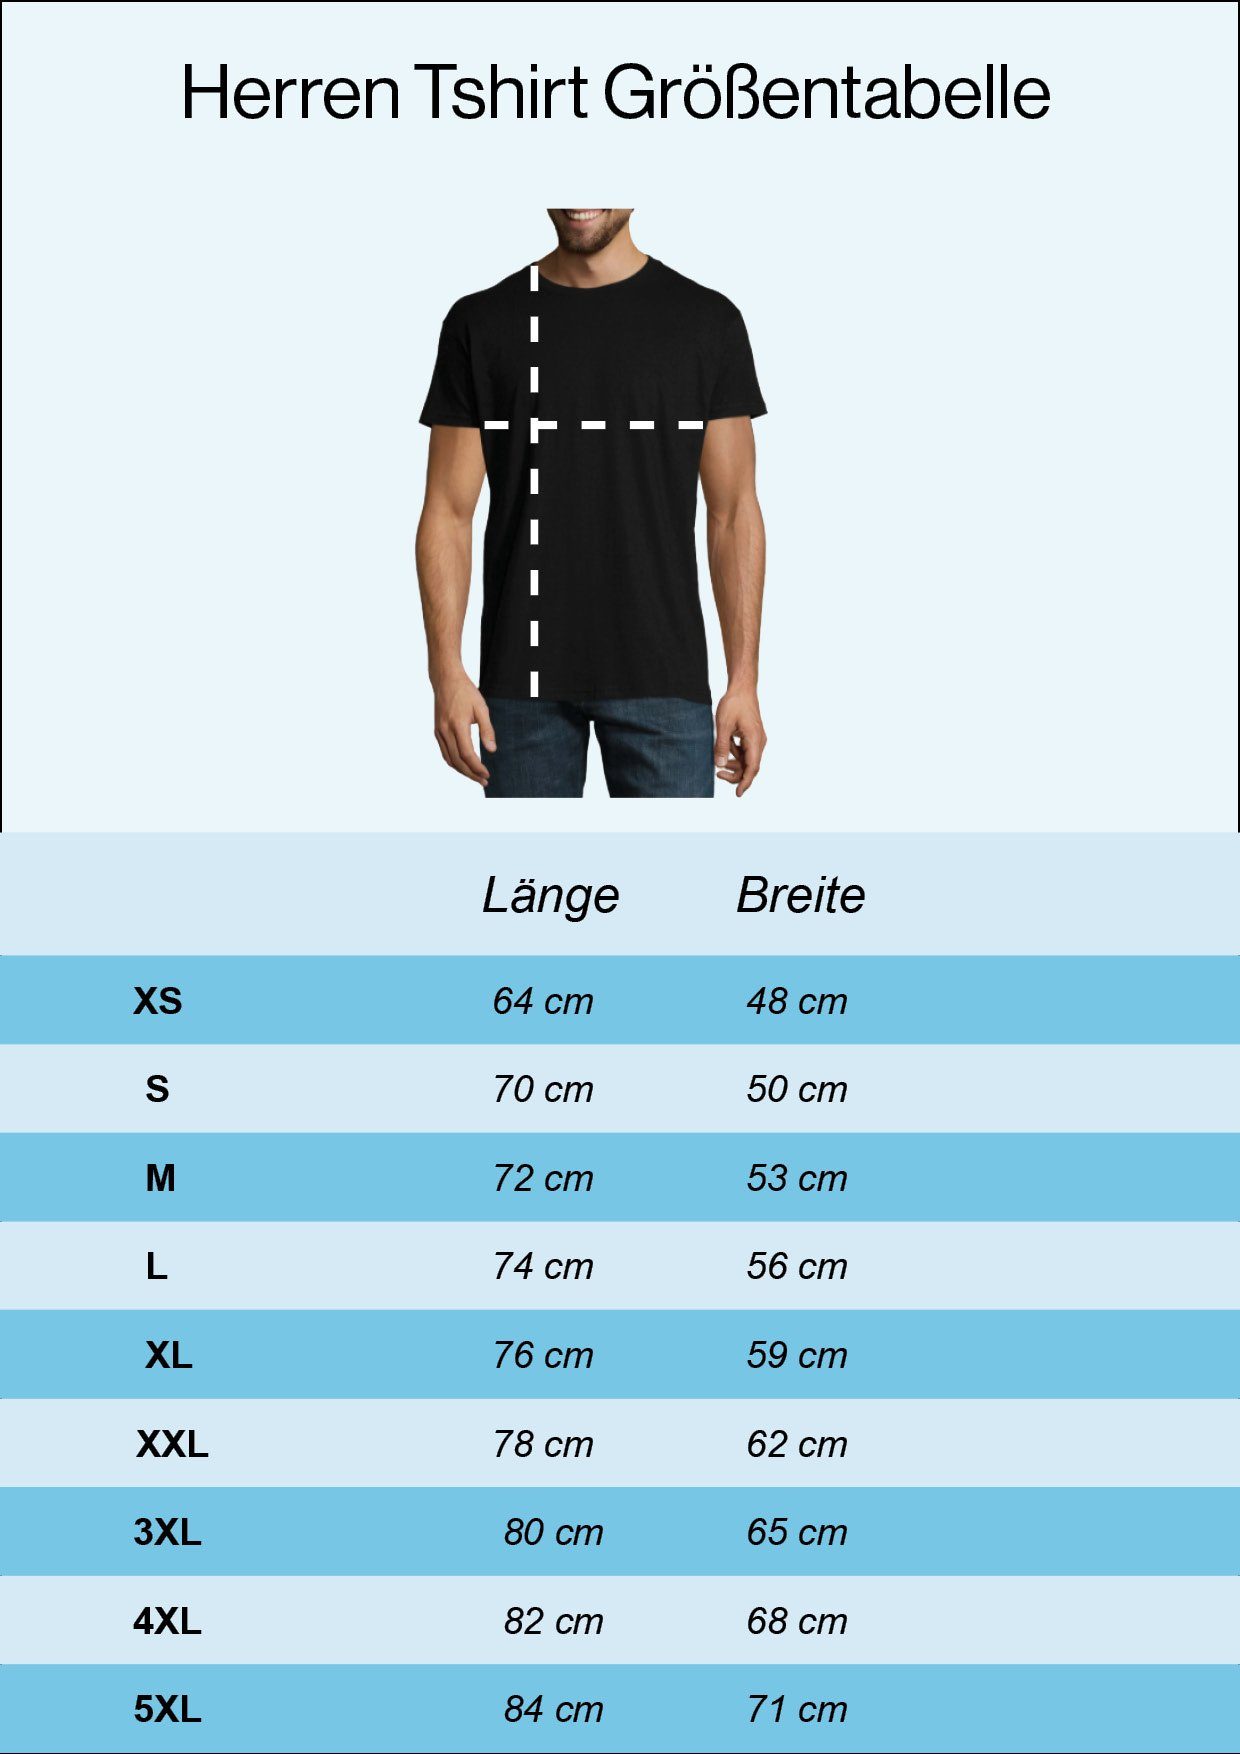 T-Shirt mit Shirt trendigen Herren Burgund Frontprint Youth Stadtkind Designz